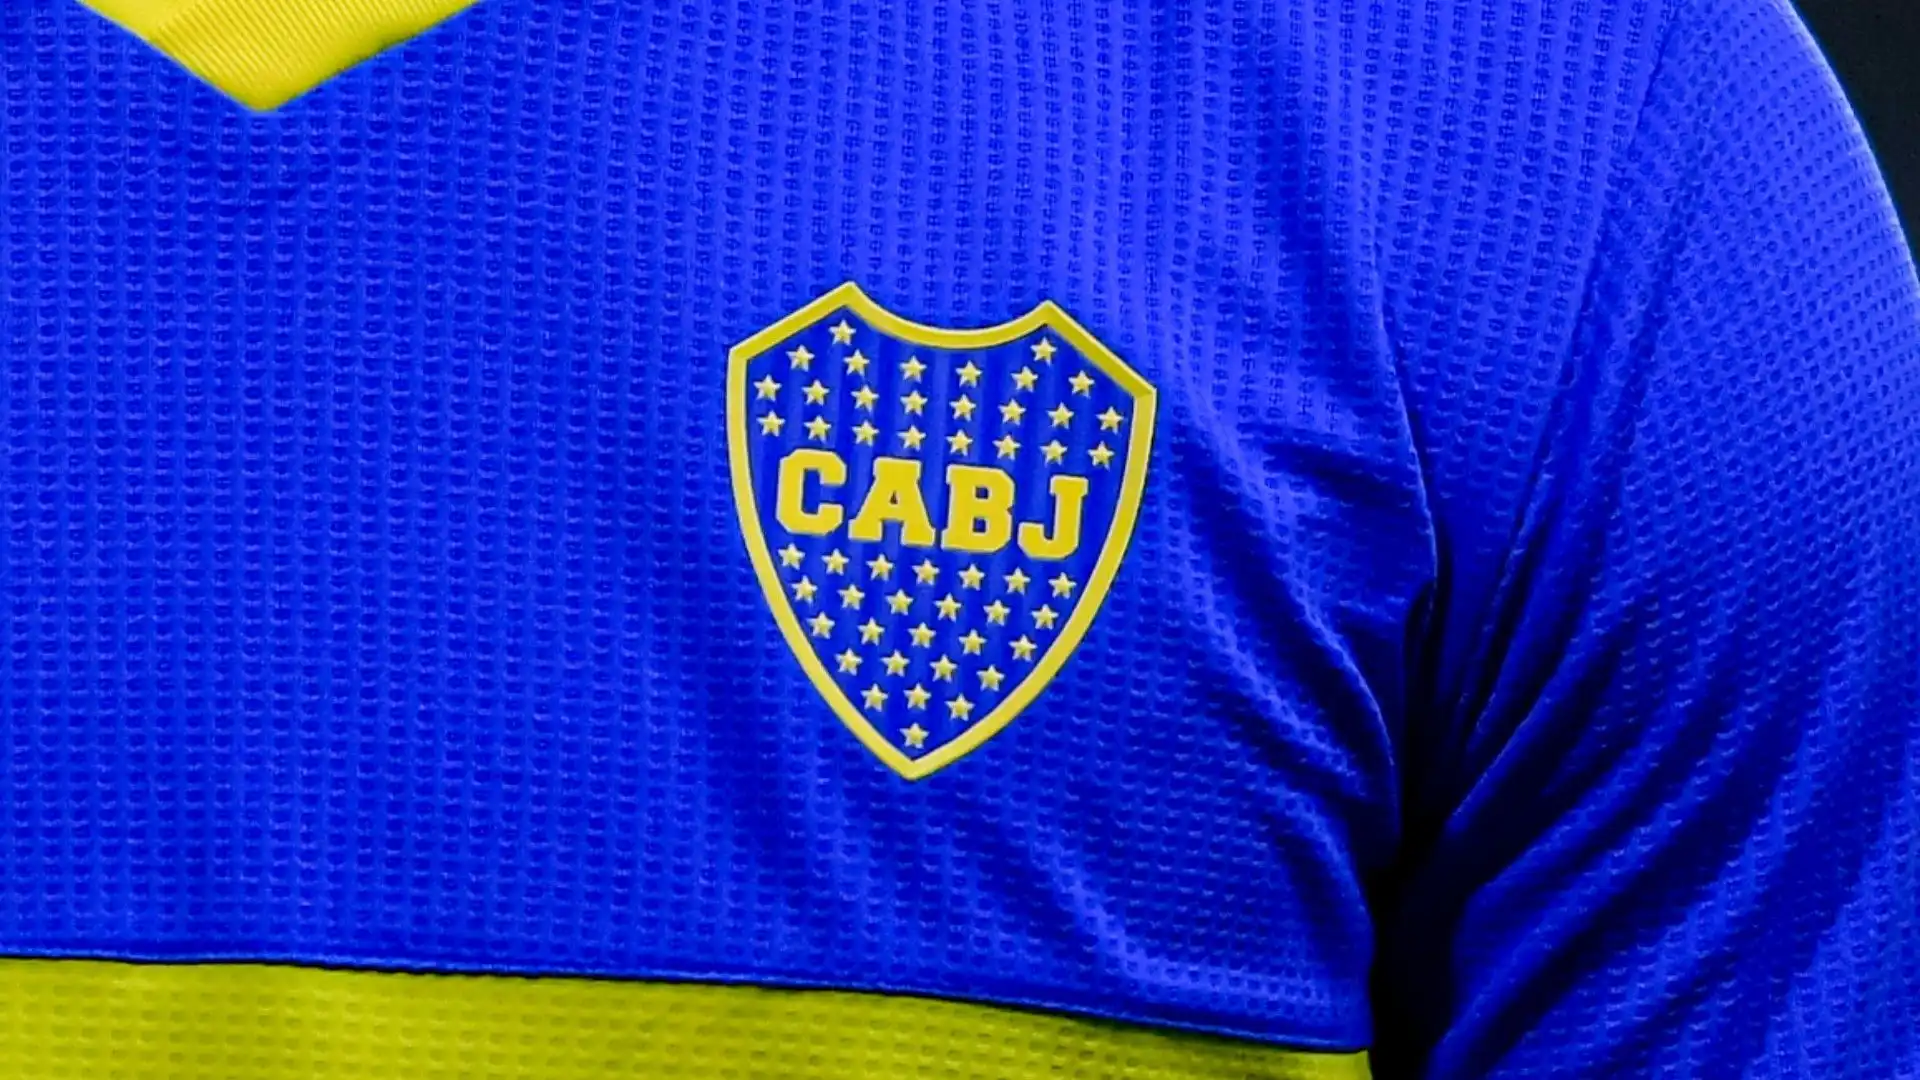 2- Boca Juniors